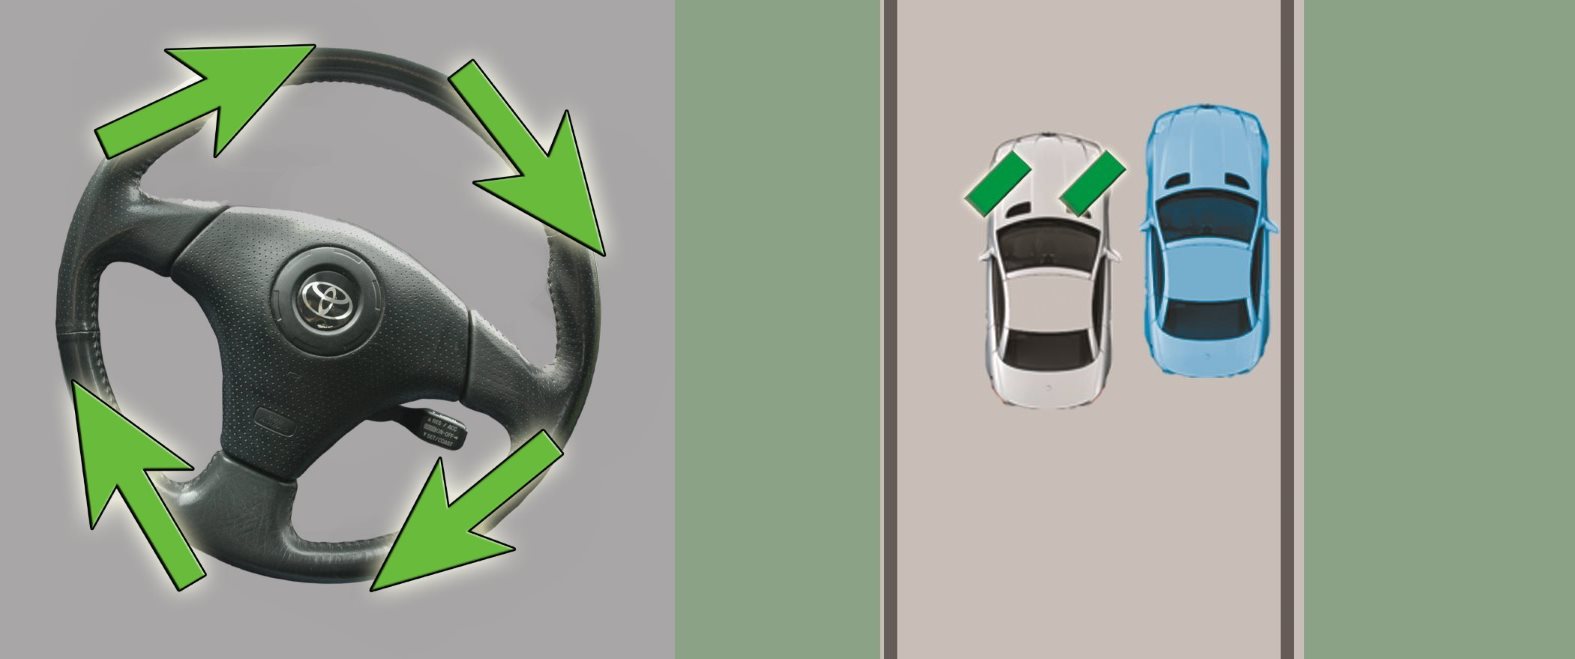 Машину ведет влево причины: Почему машину тянет влево или вправо когда отпускаешь руль -